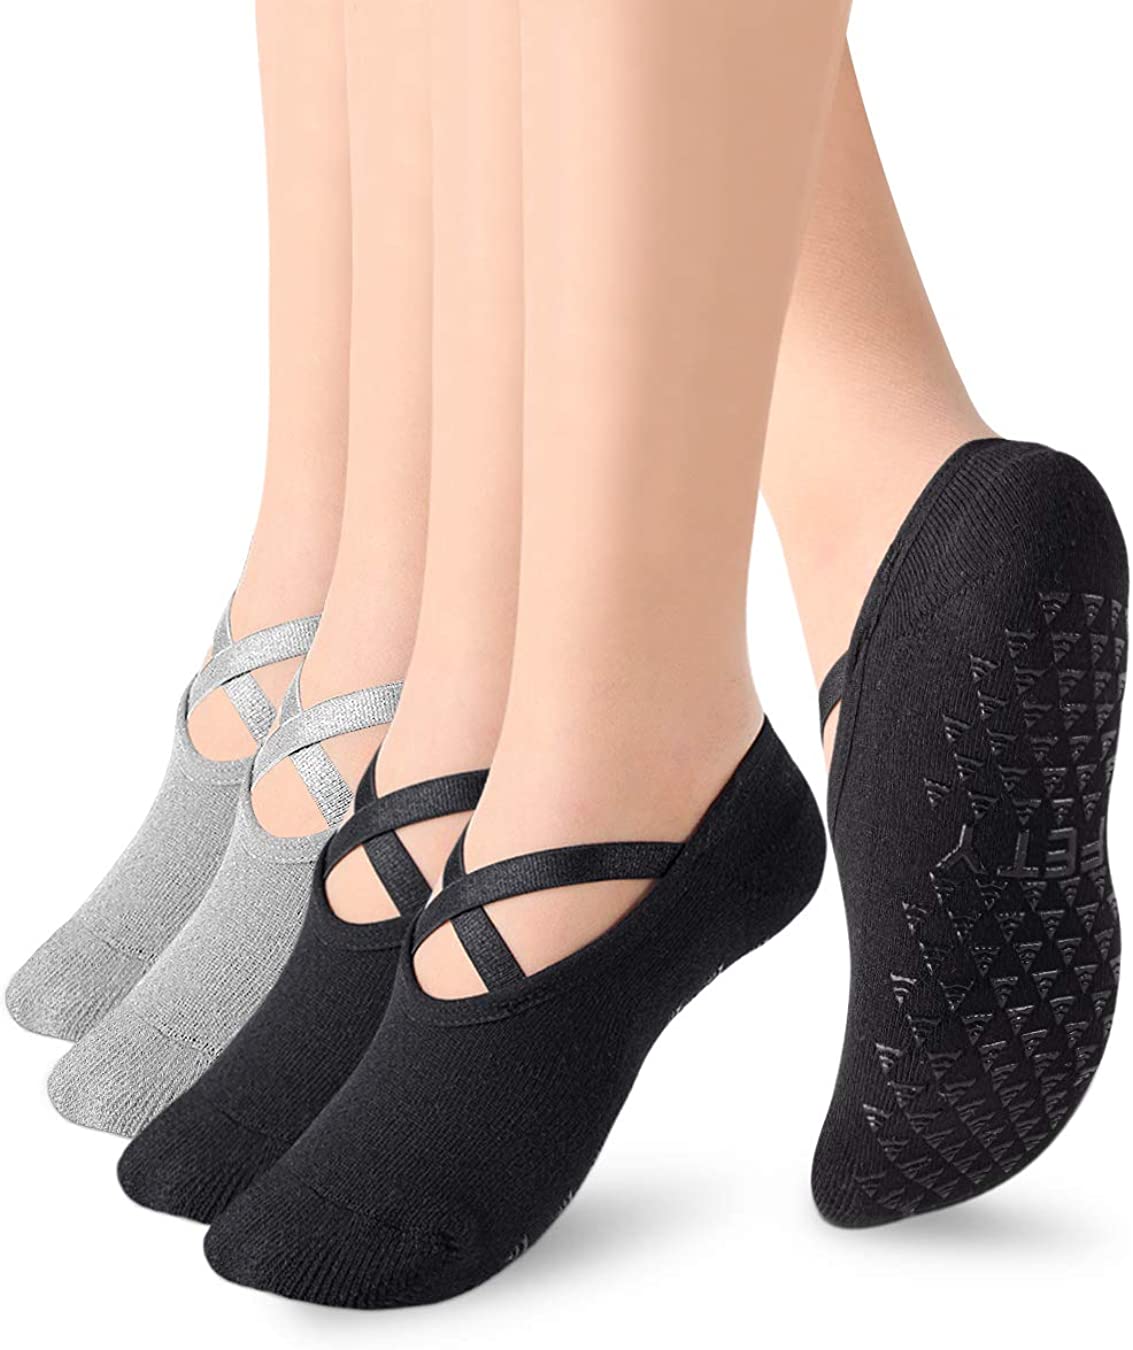 Calcetines de yoga con empuñaduras para mujeres, calcetines